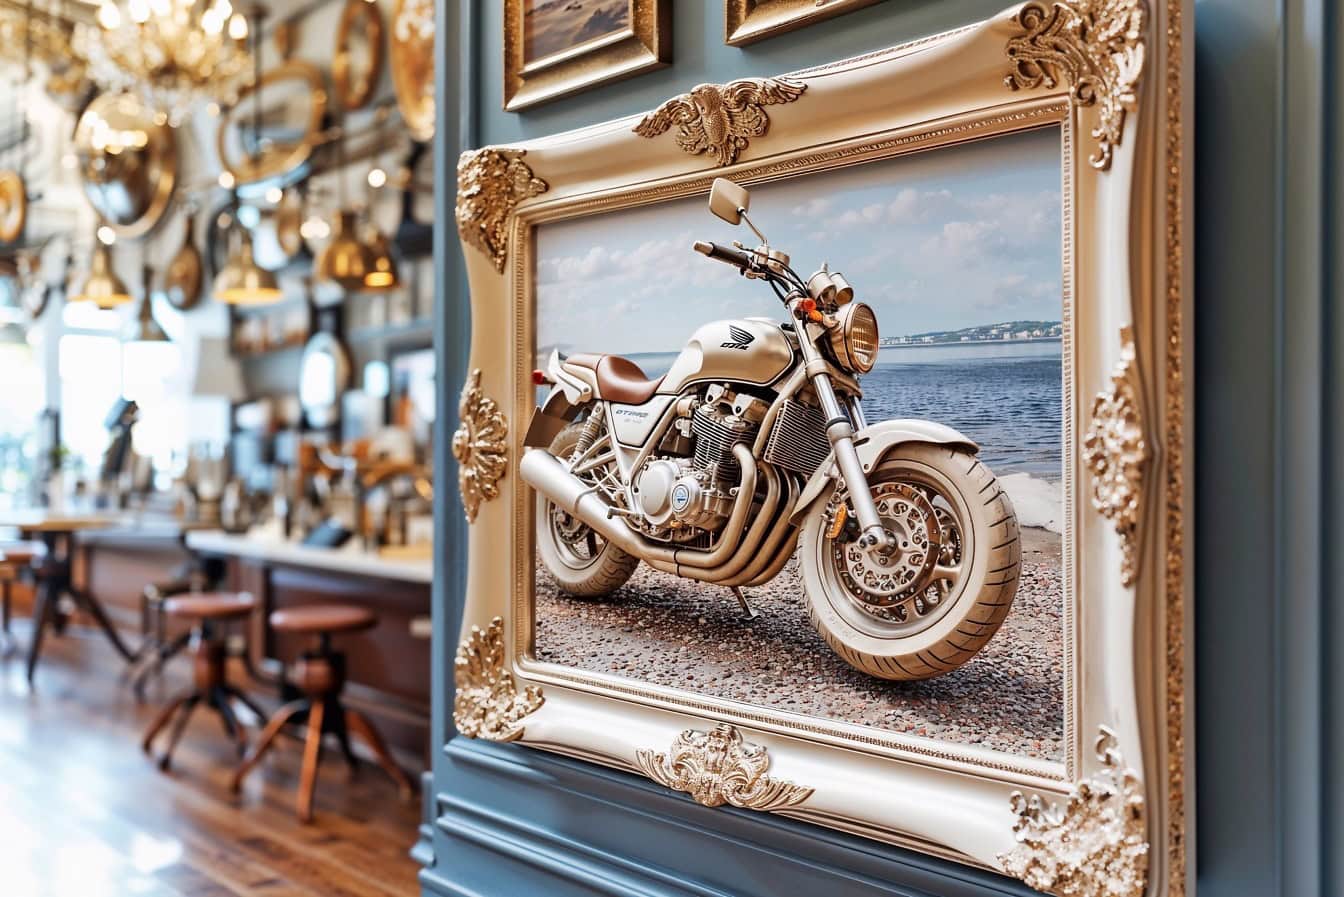 Gambar 3D sepeda motor dalam bingkai foto Victoria tergantung di dinding di dalam kafe-restoran mewah